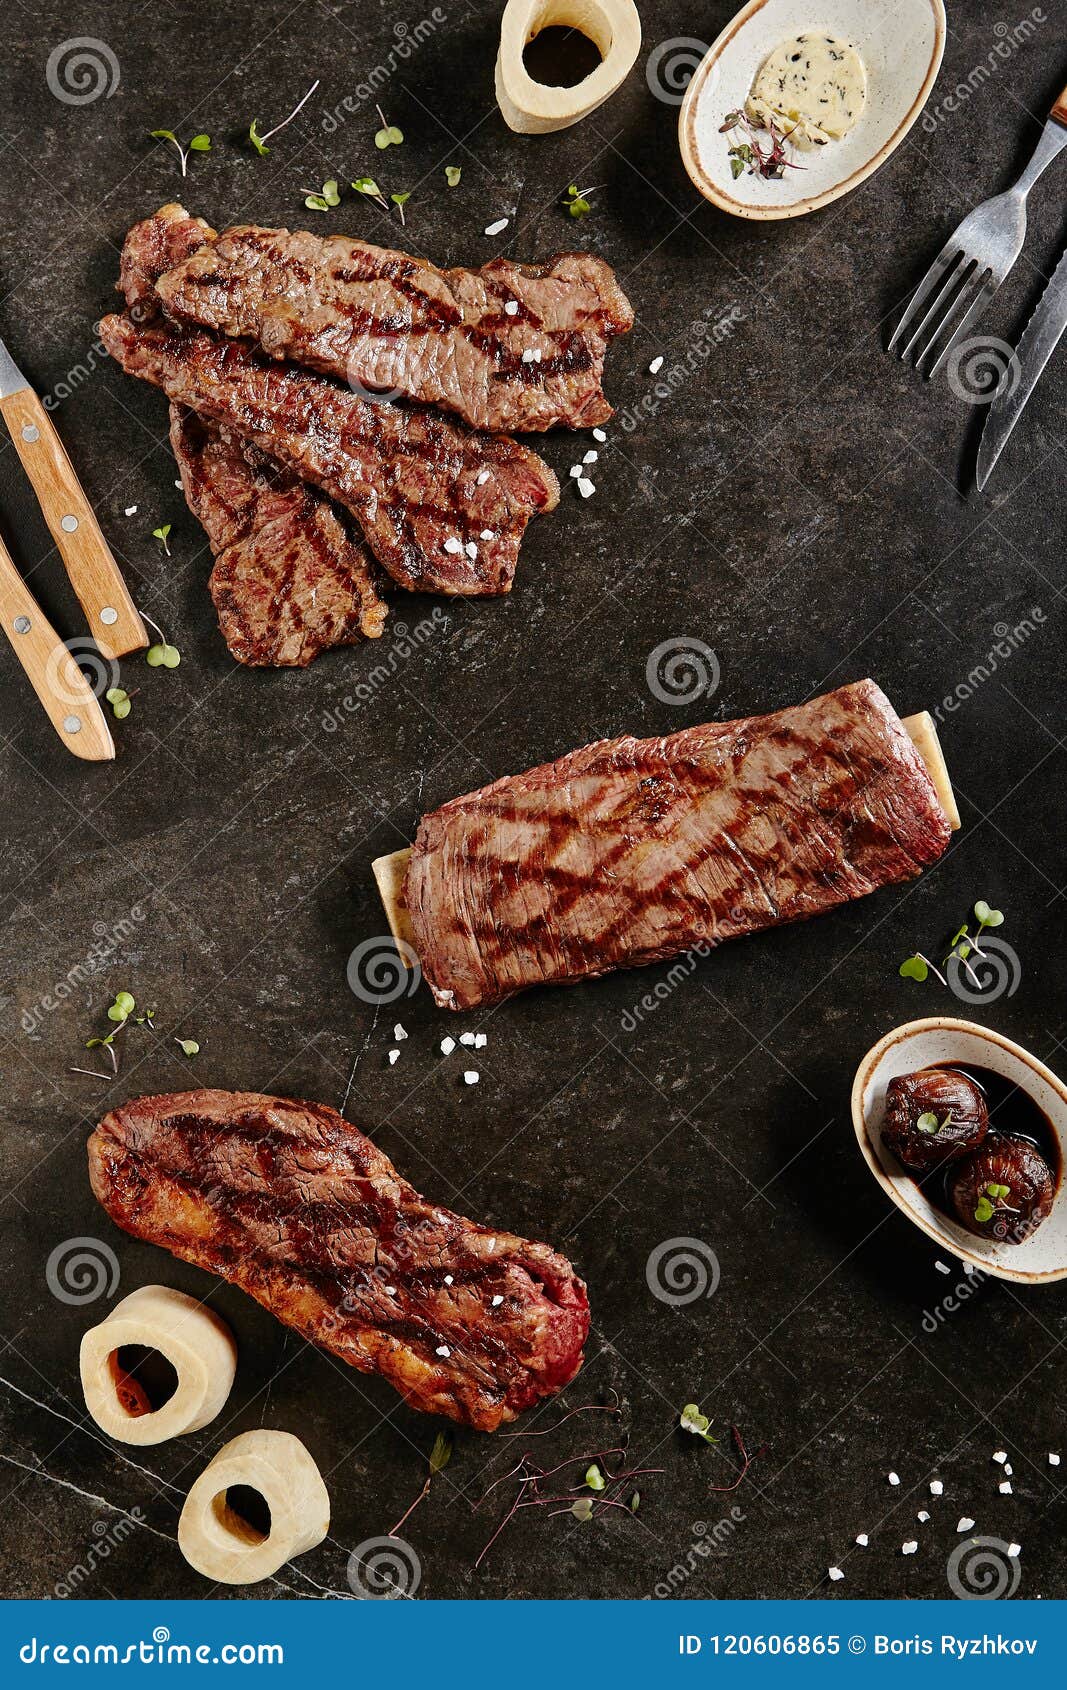 gaucho steak, flank steak and tri-tip steak on dark backdrop